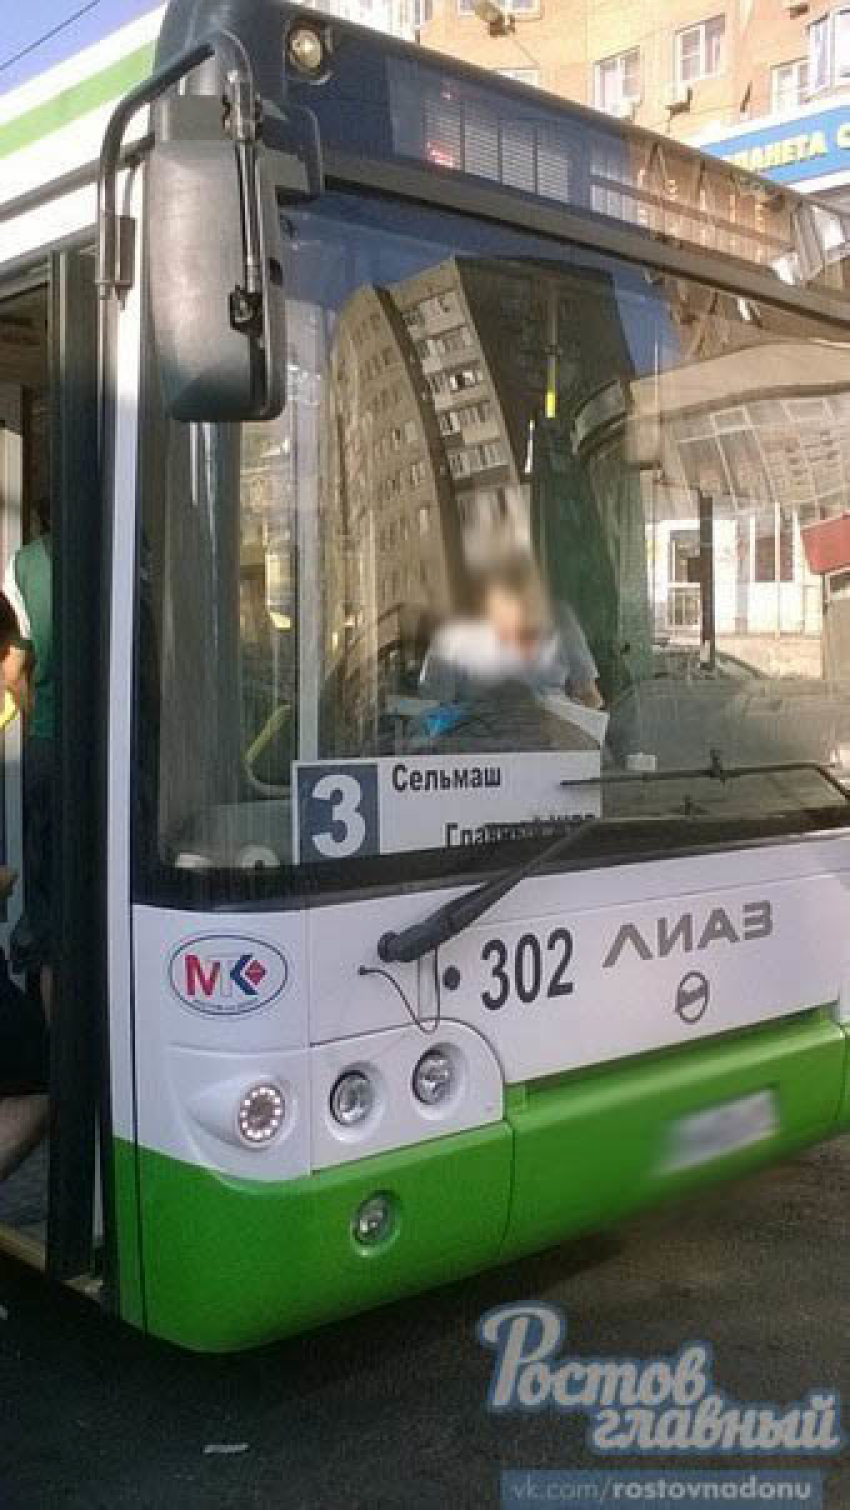 Из-за нервного водителя автобуса в Ростове пострадала беременная женщина с годовалым ребенком